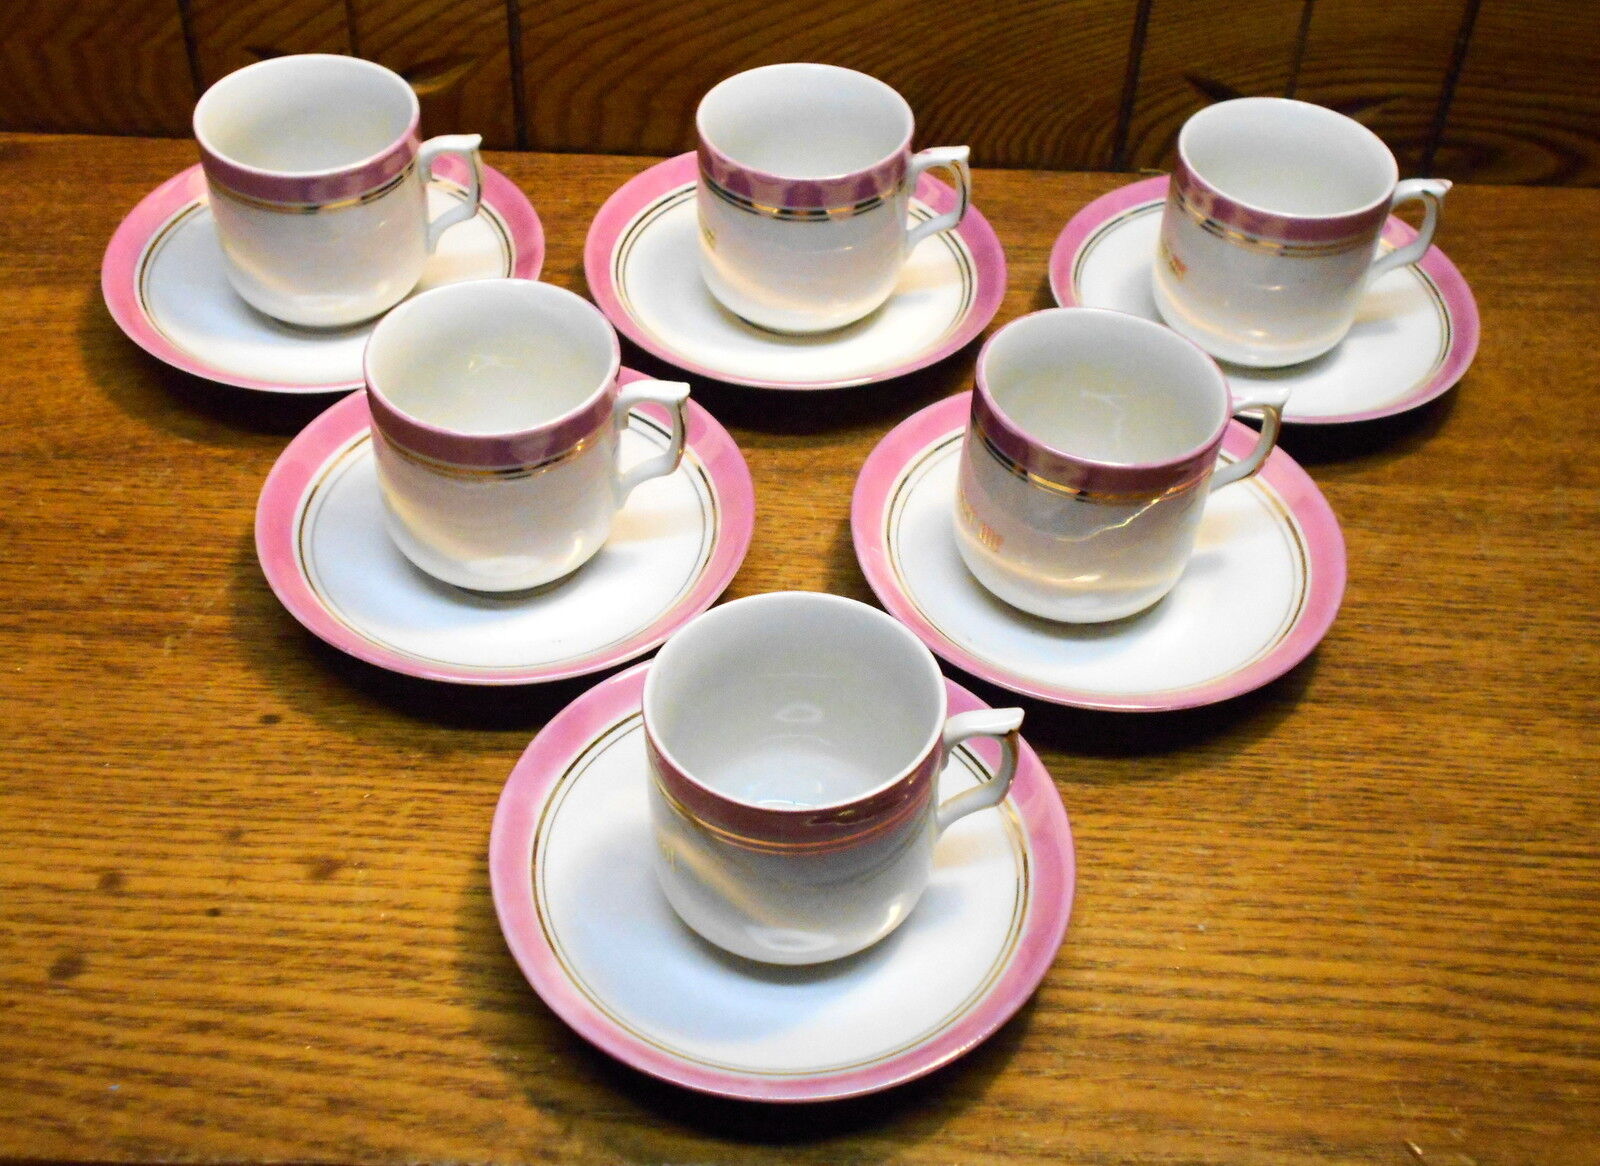 6 Old Porcelain Demitasse Cup & Saucer Sets - Germany - Think Of Me Remember Me Nowa niska cena